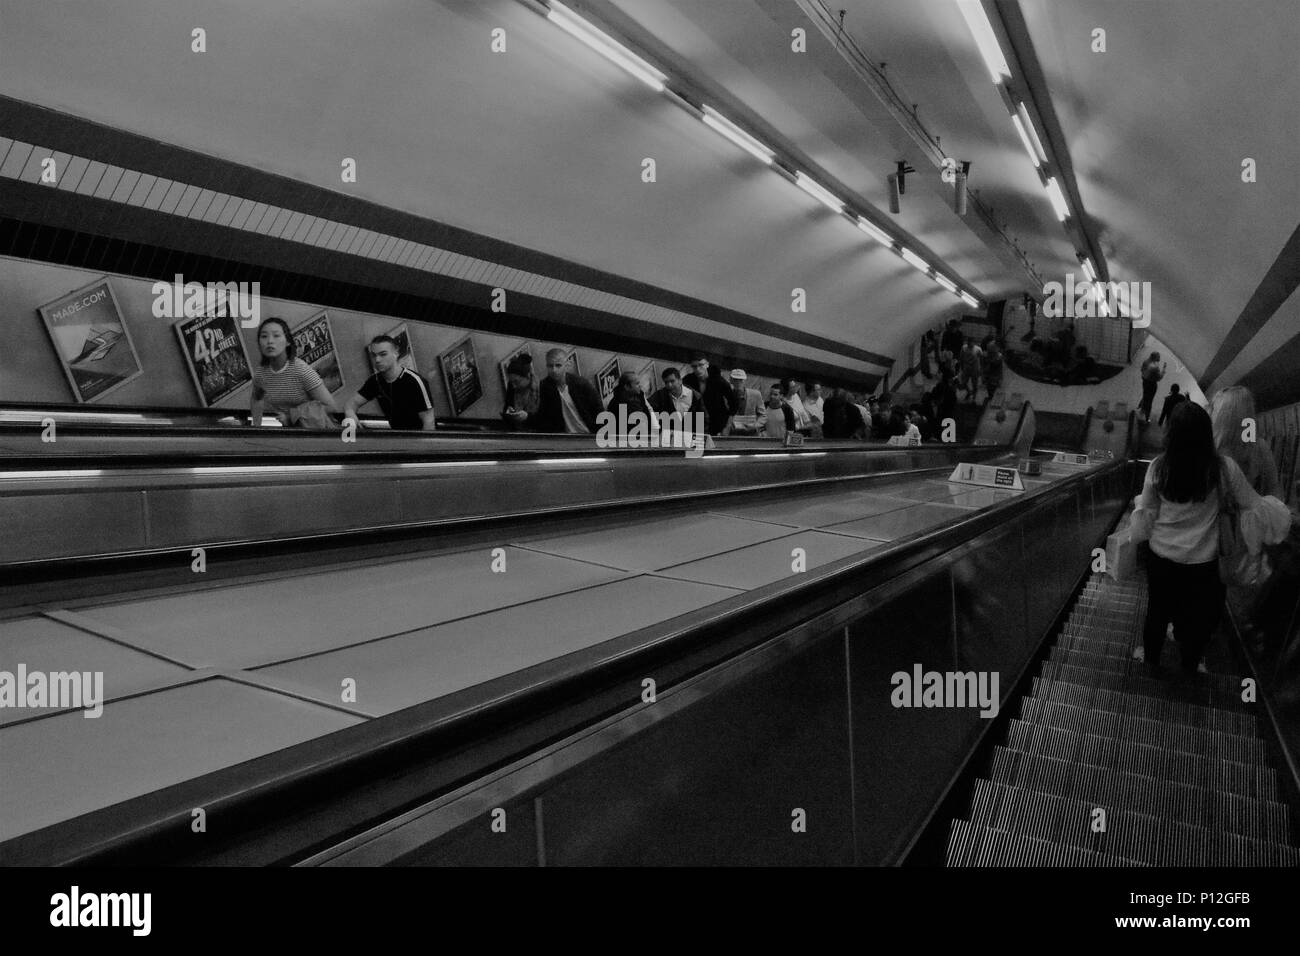 Schwarz-weiß Bild von Menschen auf Fahrtreppen in der Londoner U-Bahn, UK-Konzept/story Bild Stockfoto